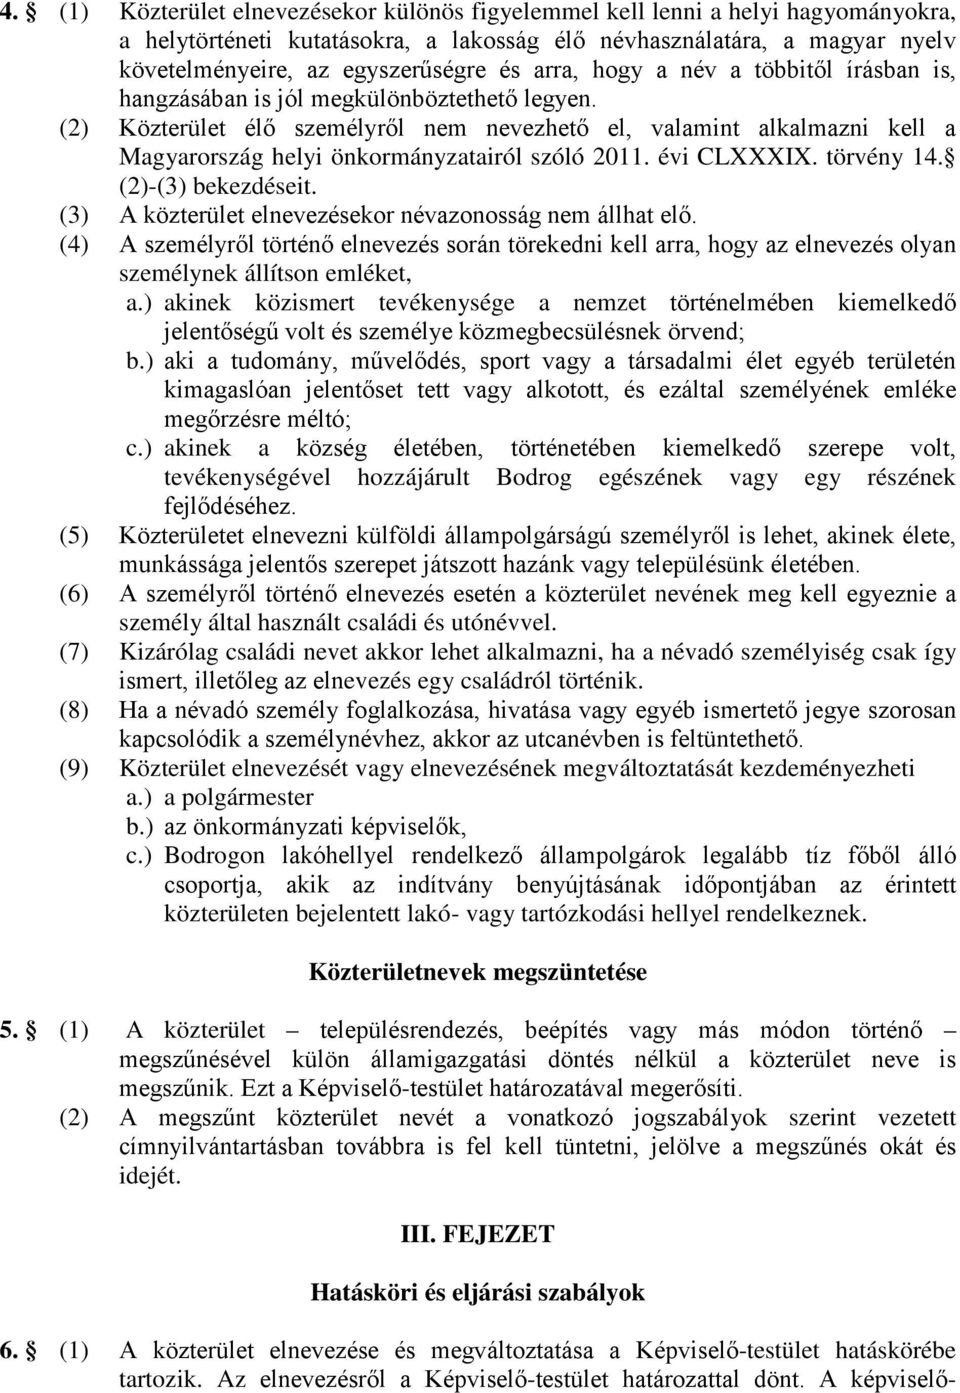 (2) Közterület élő személyről nem nevezhető el, valamint alkalmazni kell a Magyarország helyi önkormányzatairól szóló 2011. évi CLXXXIX. törvény 14. (2)-(3) bekezdéseit.